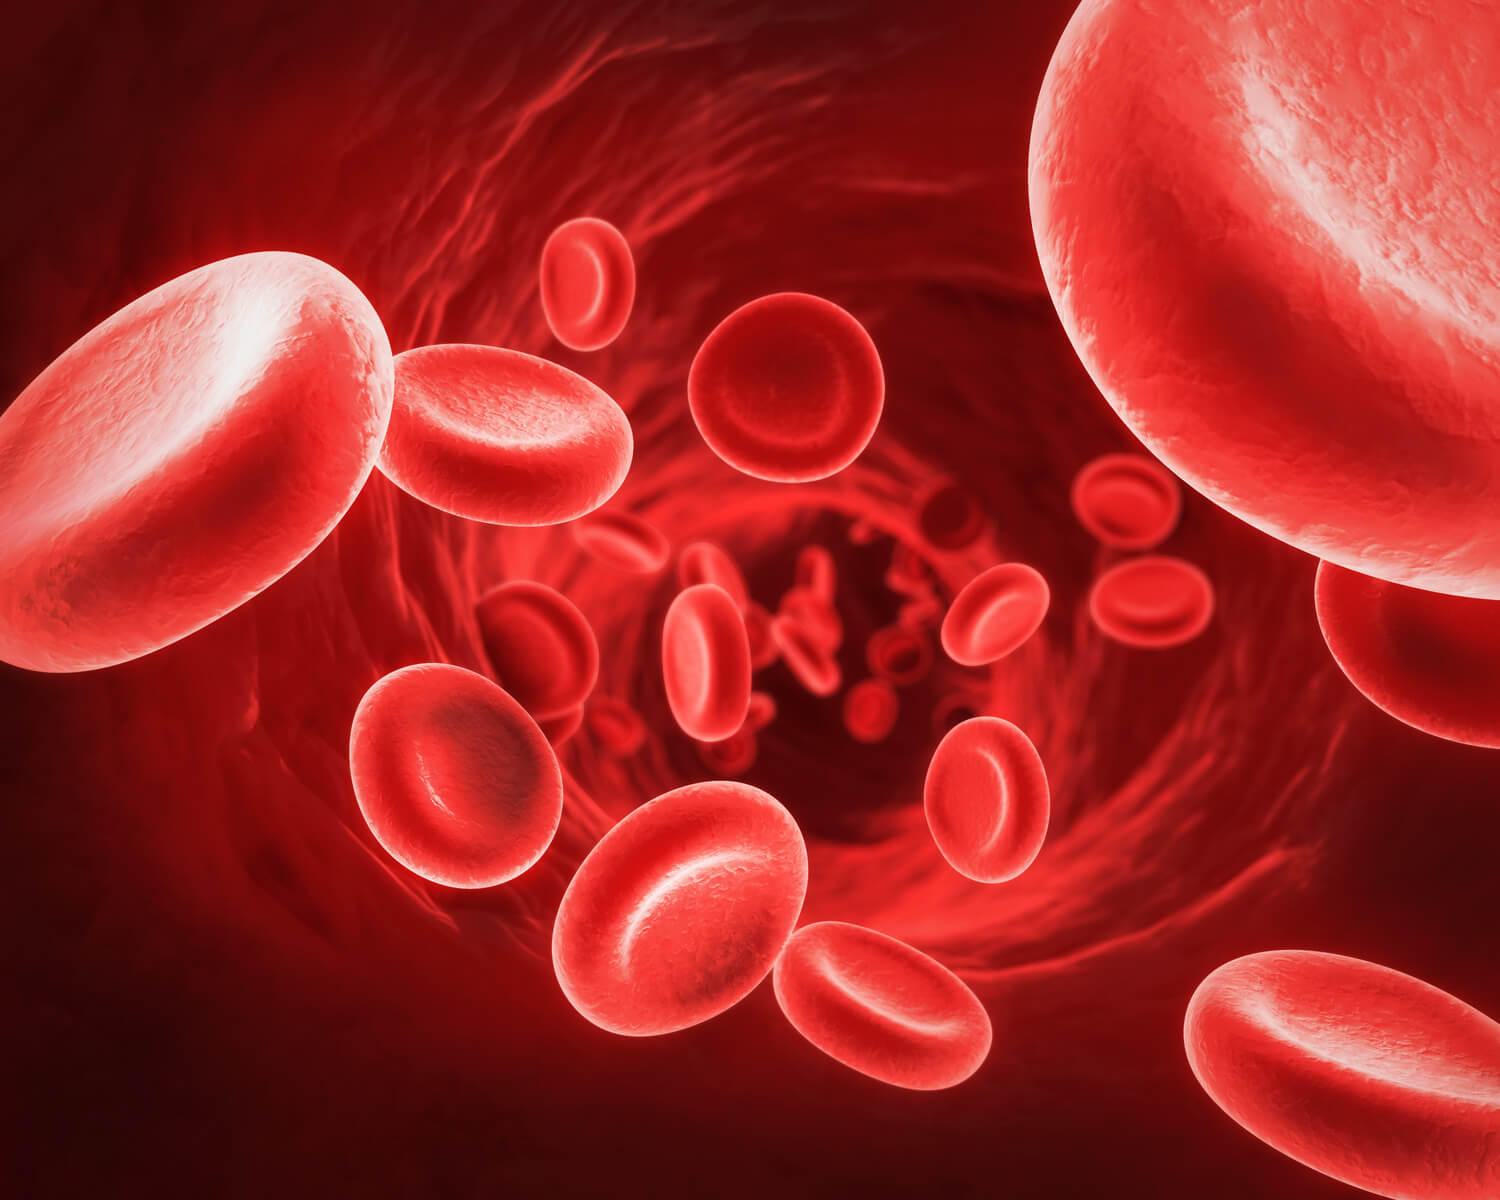 Płytki krwi w morfologii – wszystko, co musisz wiedzieć